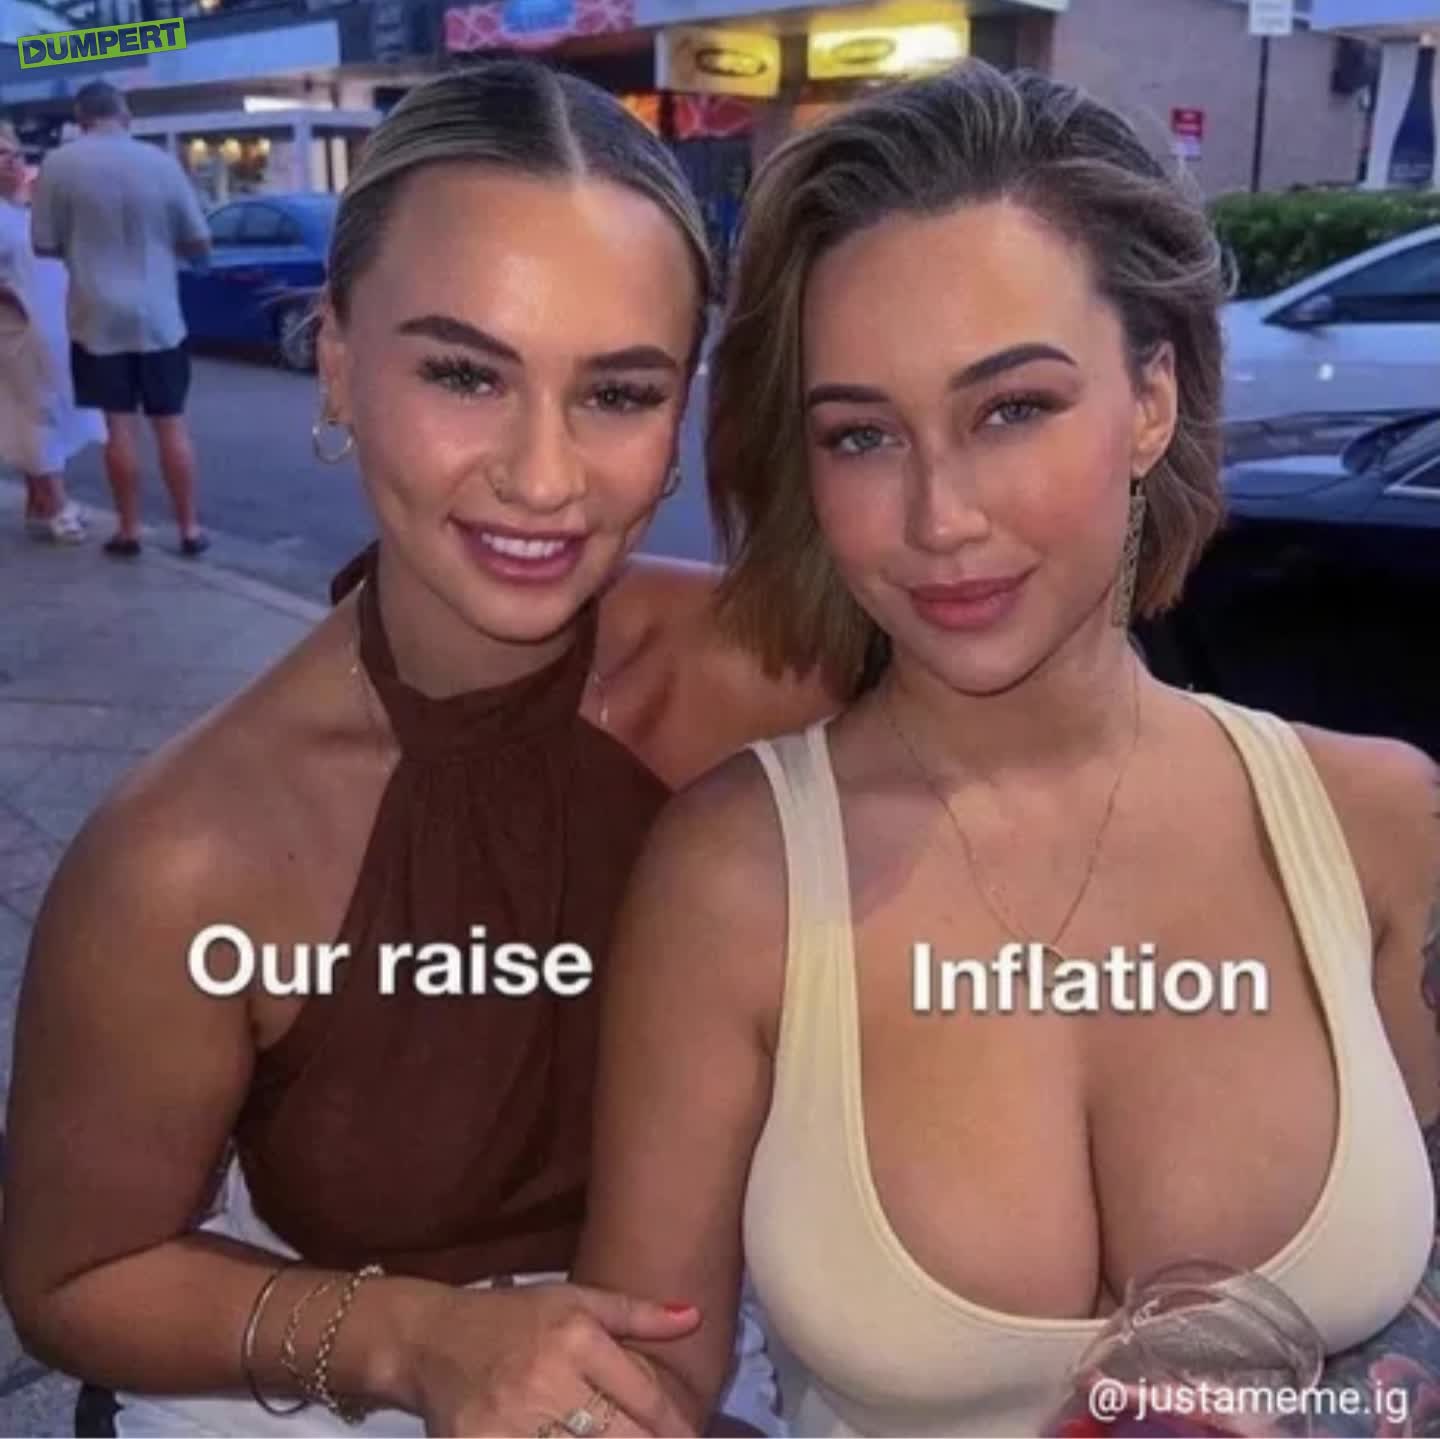 Inflatiecorrectie